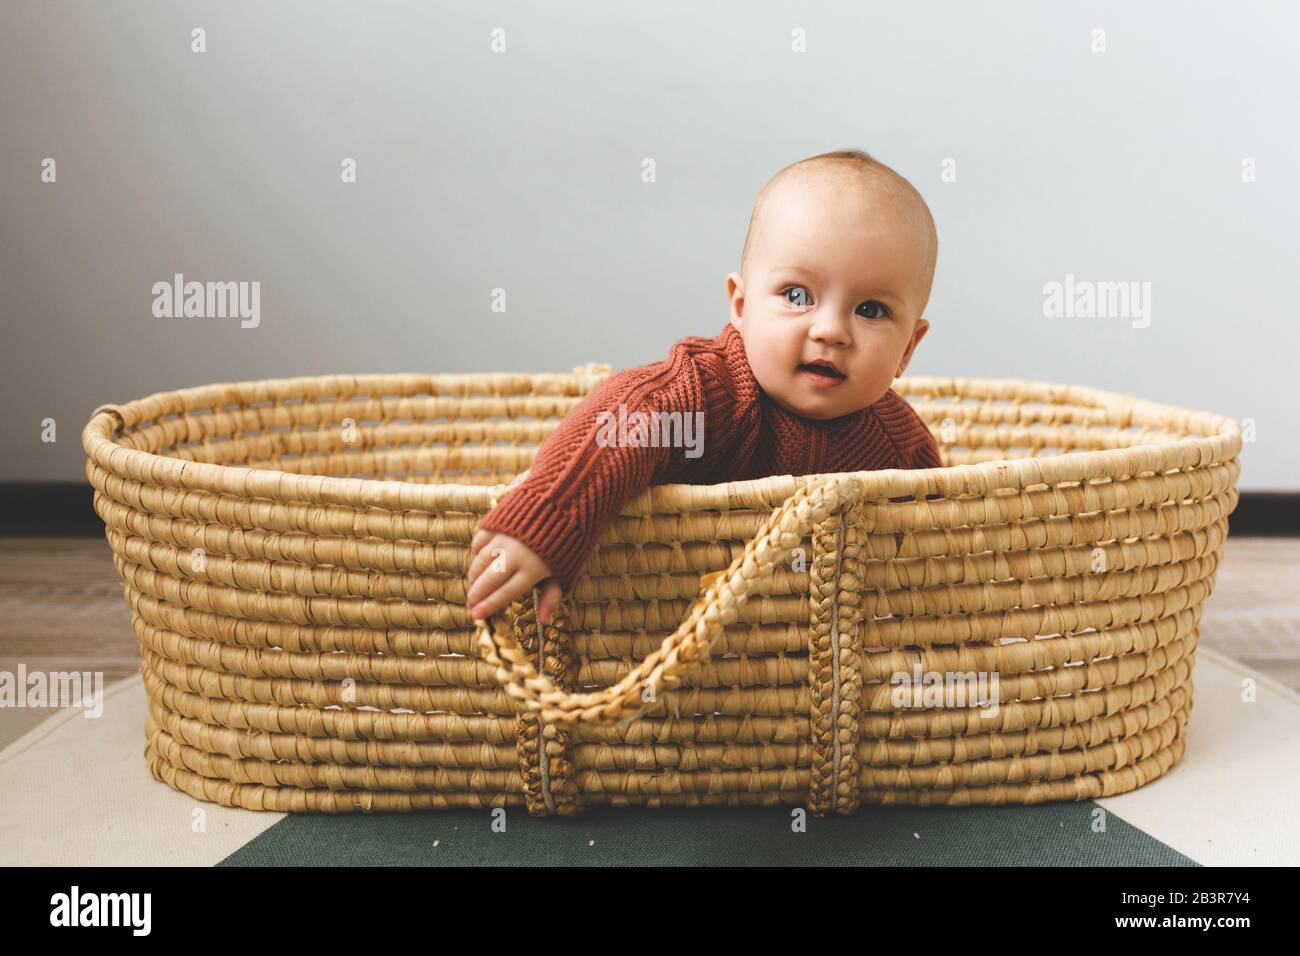 Liebenswürdig sechs Monate altes Mädchen in einem Korb auf dem Boden und mit Blick in die Kamera Stockfoto